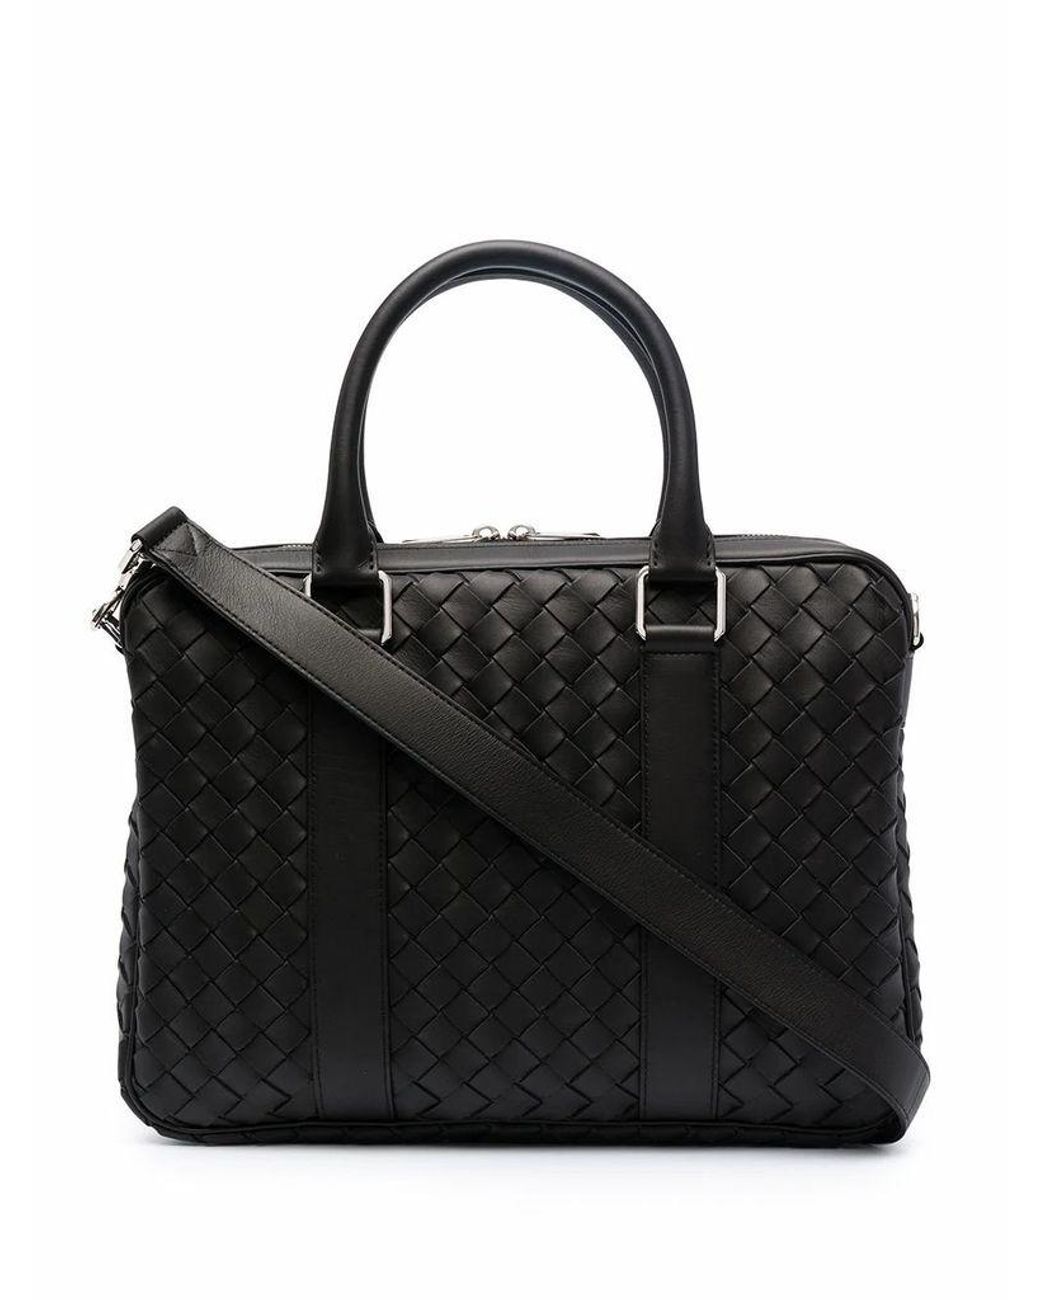 Bottega Veneta Men's 651580v0e518803 Black Leather Briefcase for Men - Lyst